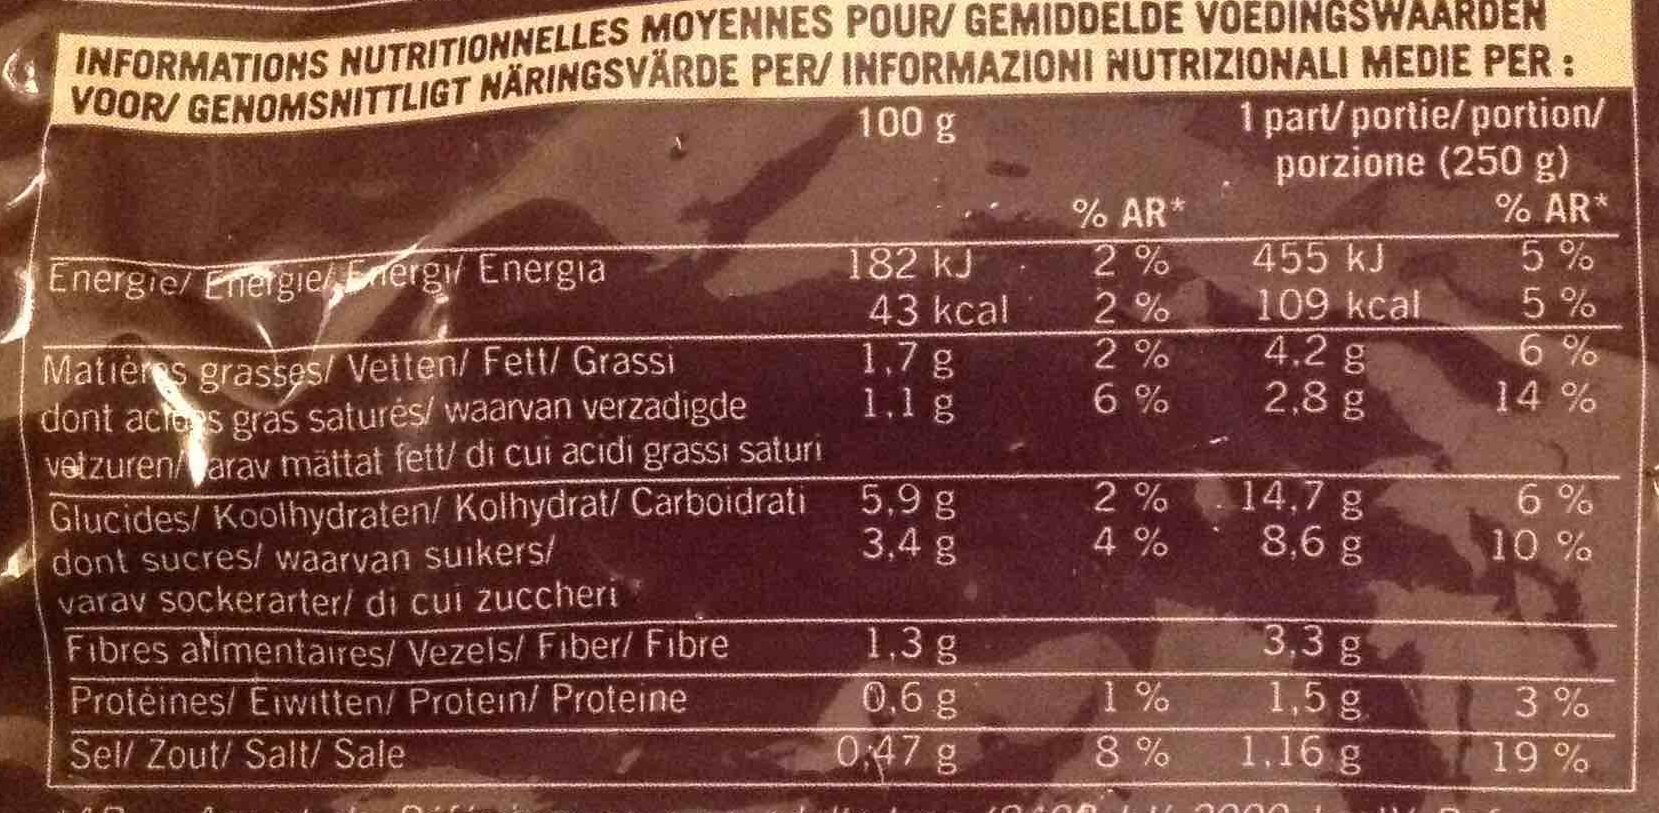 Velouté Patate douce, Carotte jaune et Ciboulette - Nutrition facts - fr